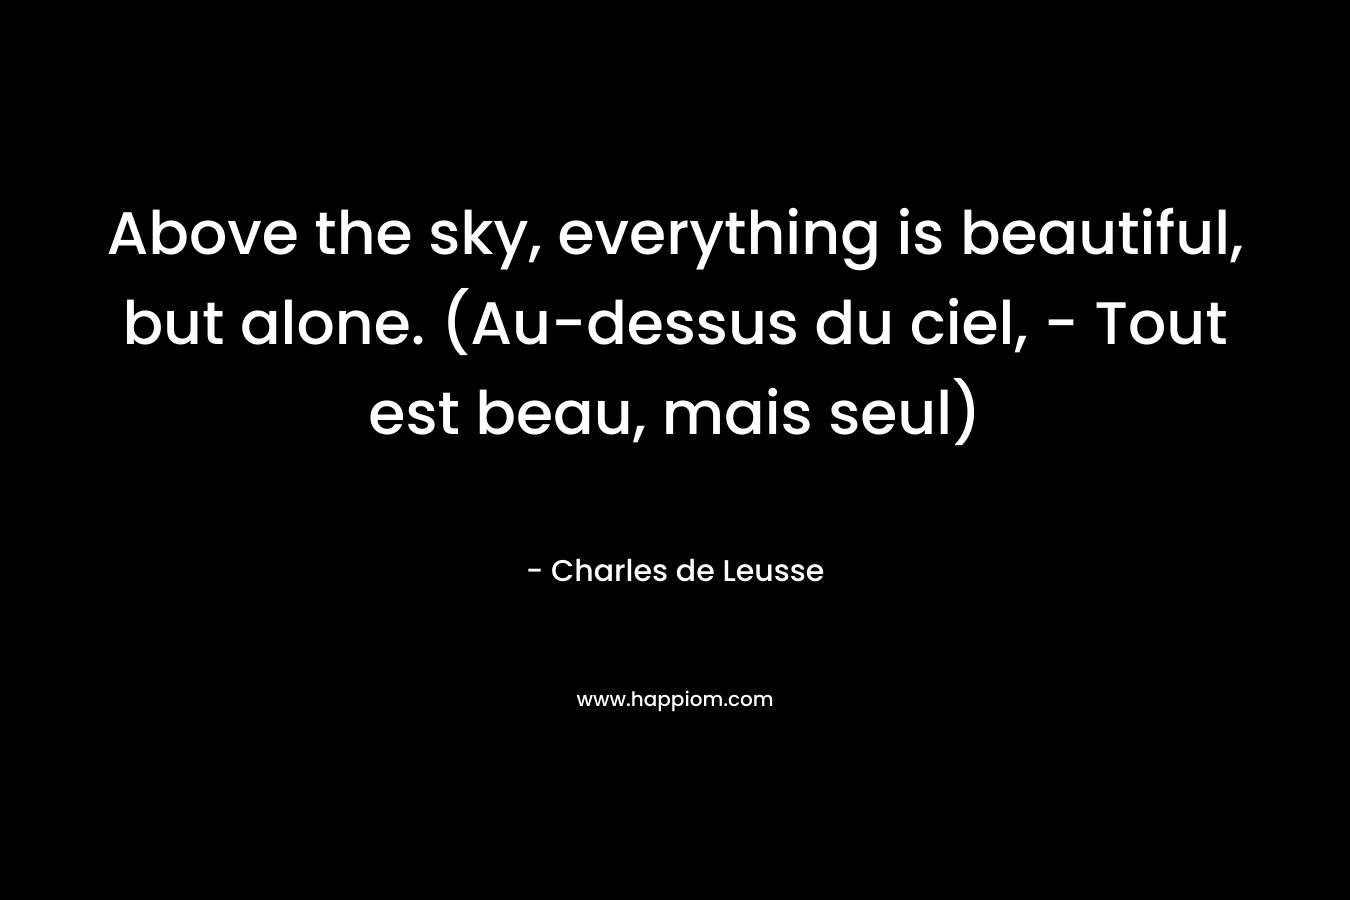 Above the sky, everything is beautiful, but alone. (Au-dessus du ciel, - Tout est beau, mais seul)